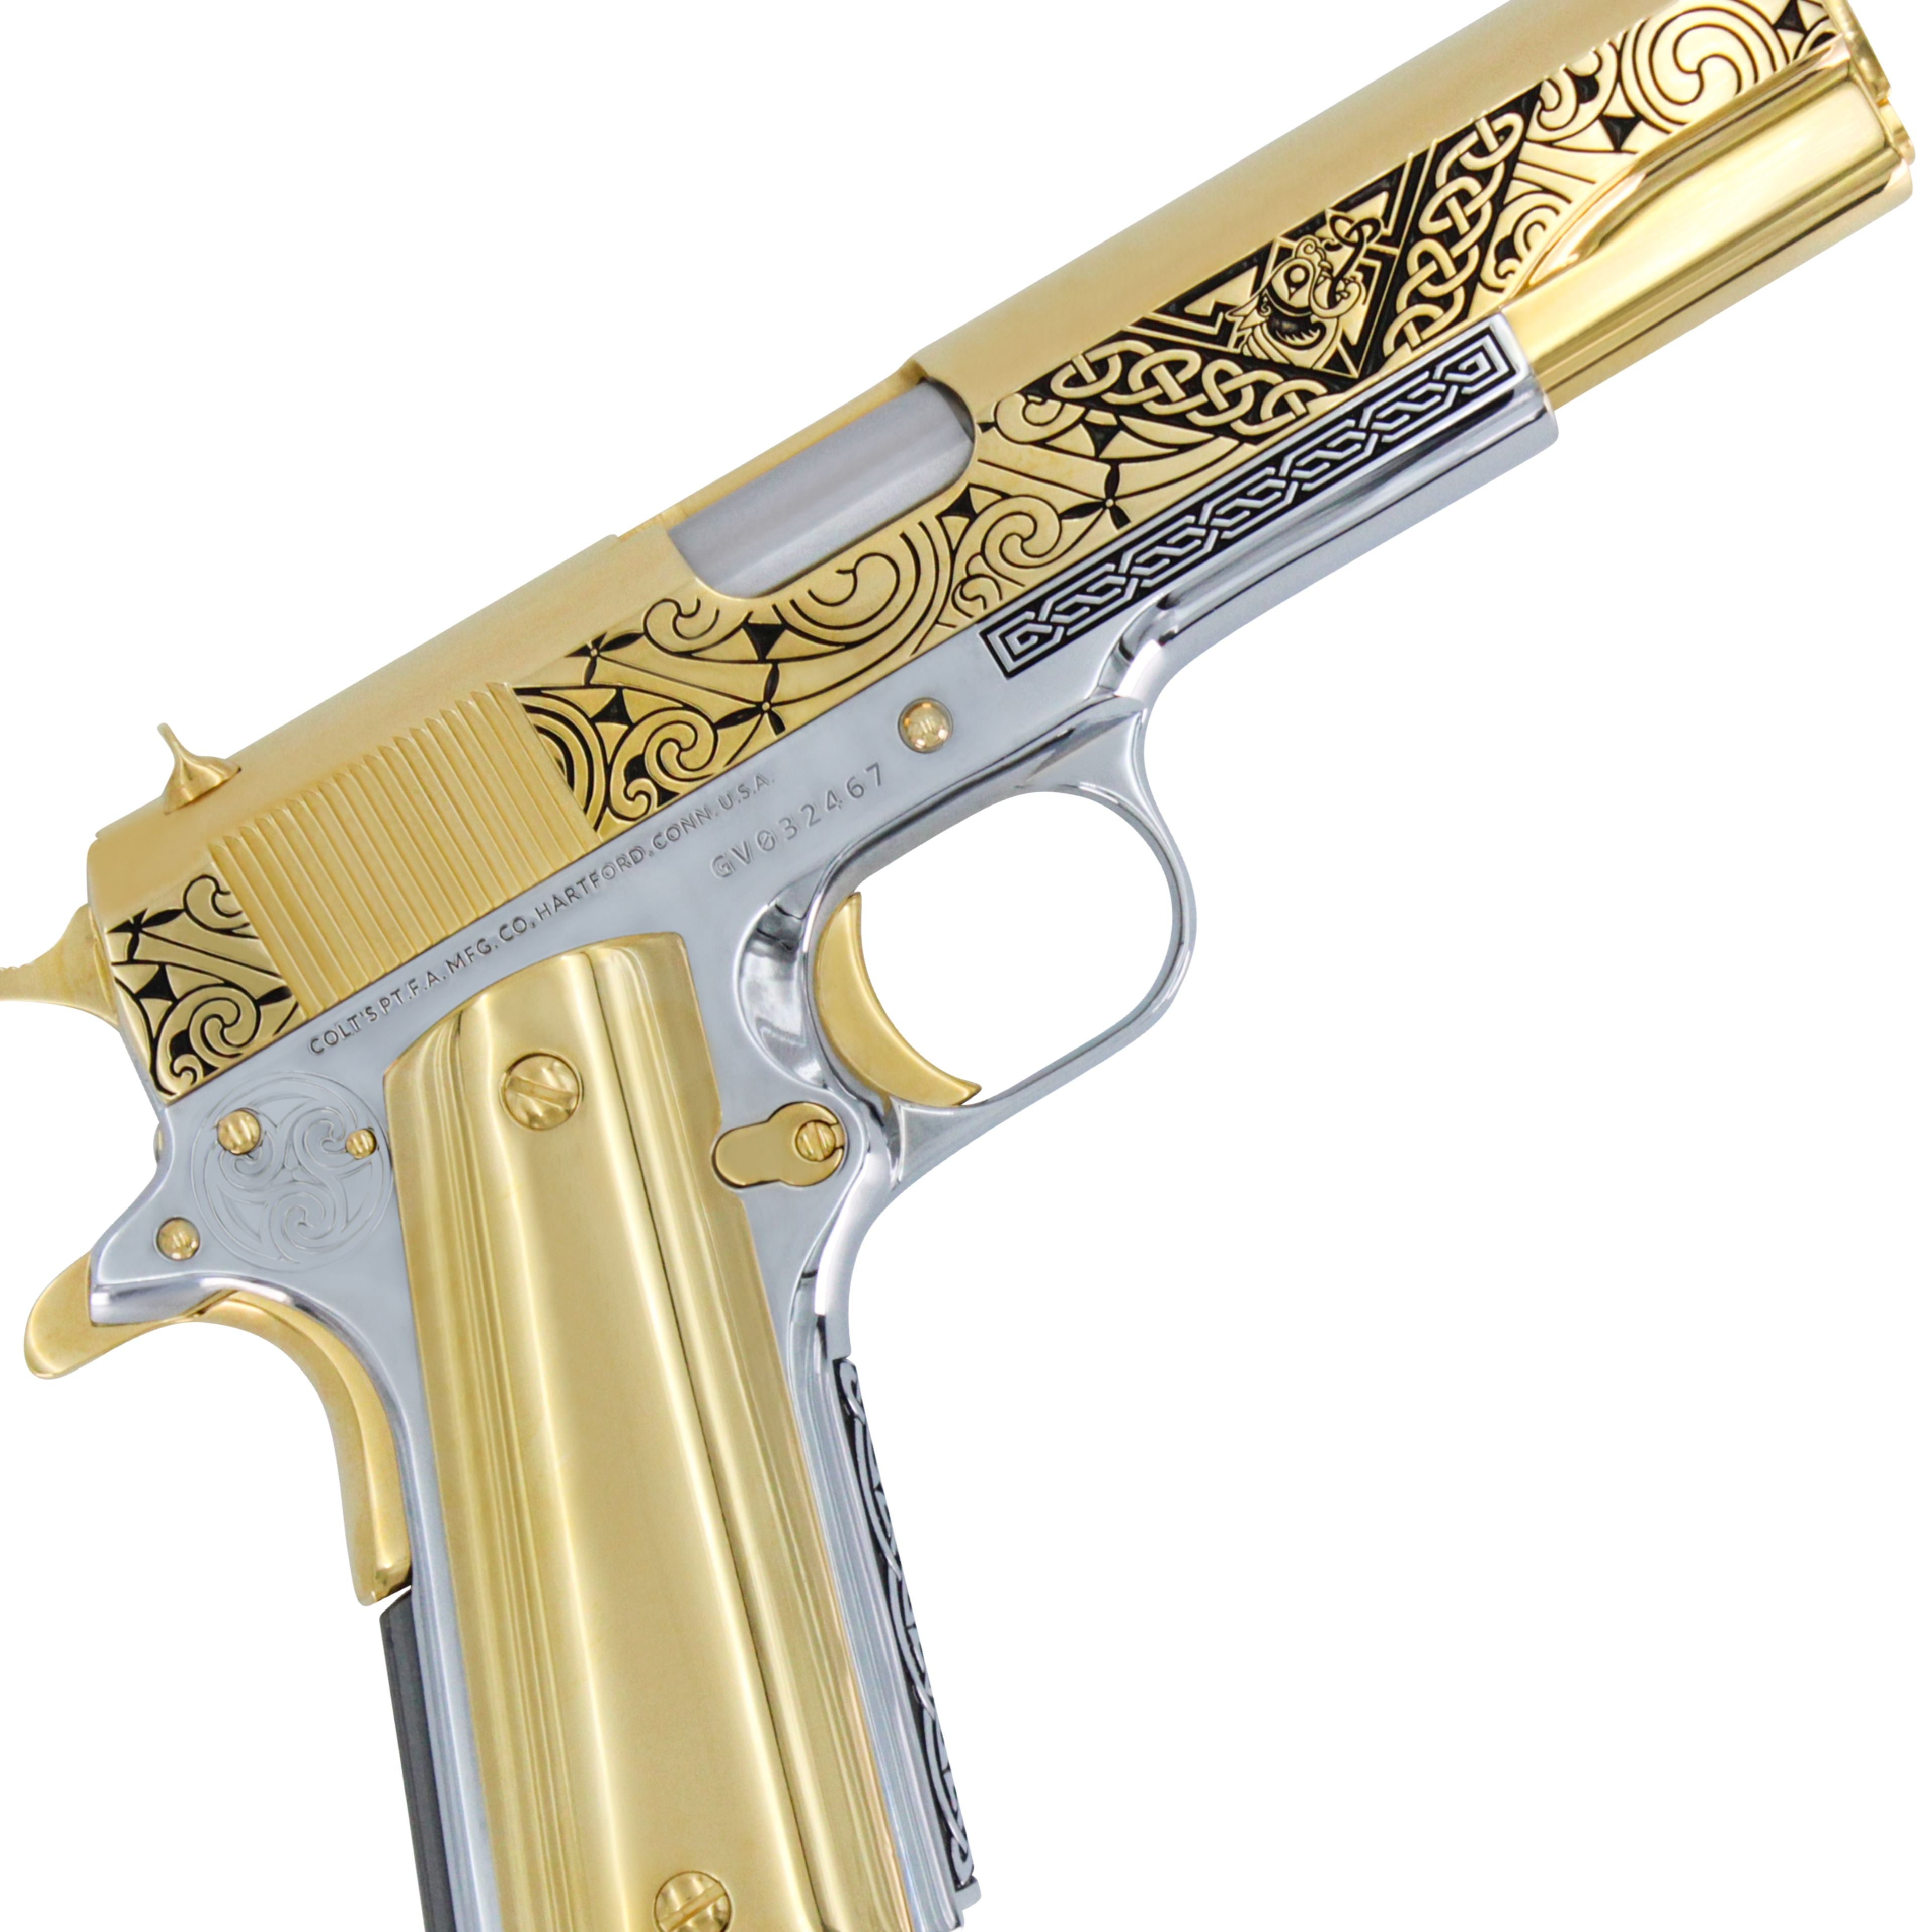 COLT 1911 Government CELTIC Engraved Design, 45 ACP, 24KT GOLD, Chrome Finish Frame, SKU: 4335024373862 , gold pistol, 24 karat gold gun